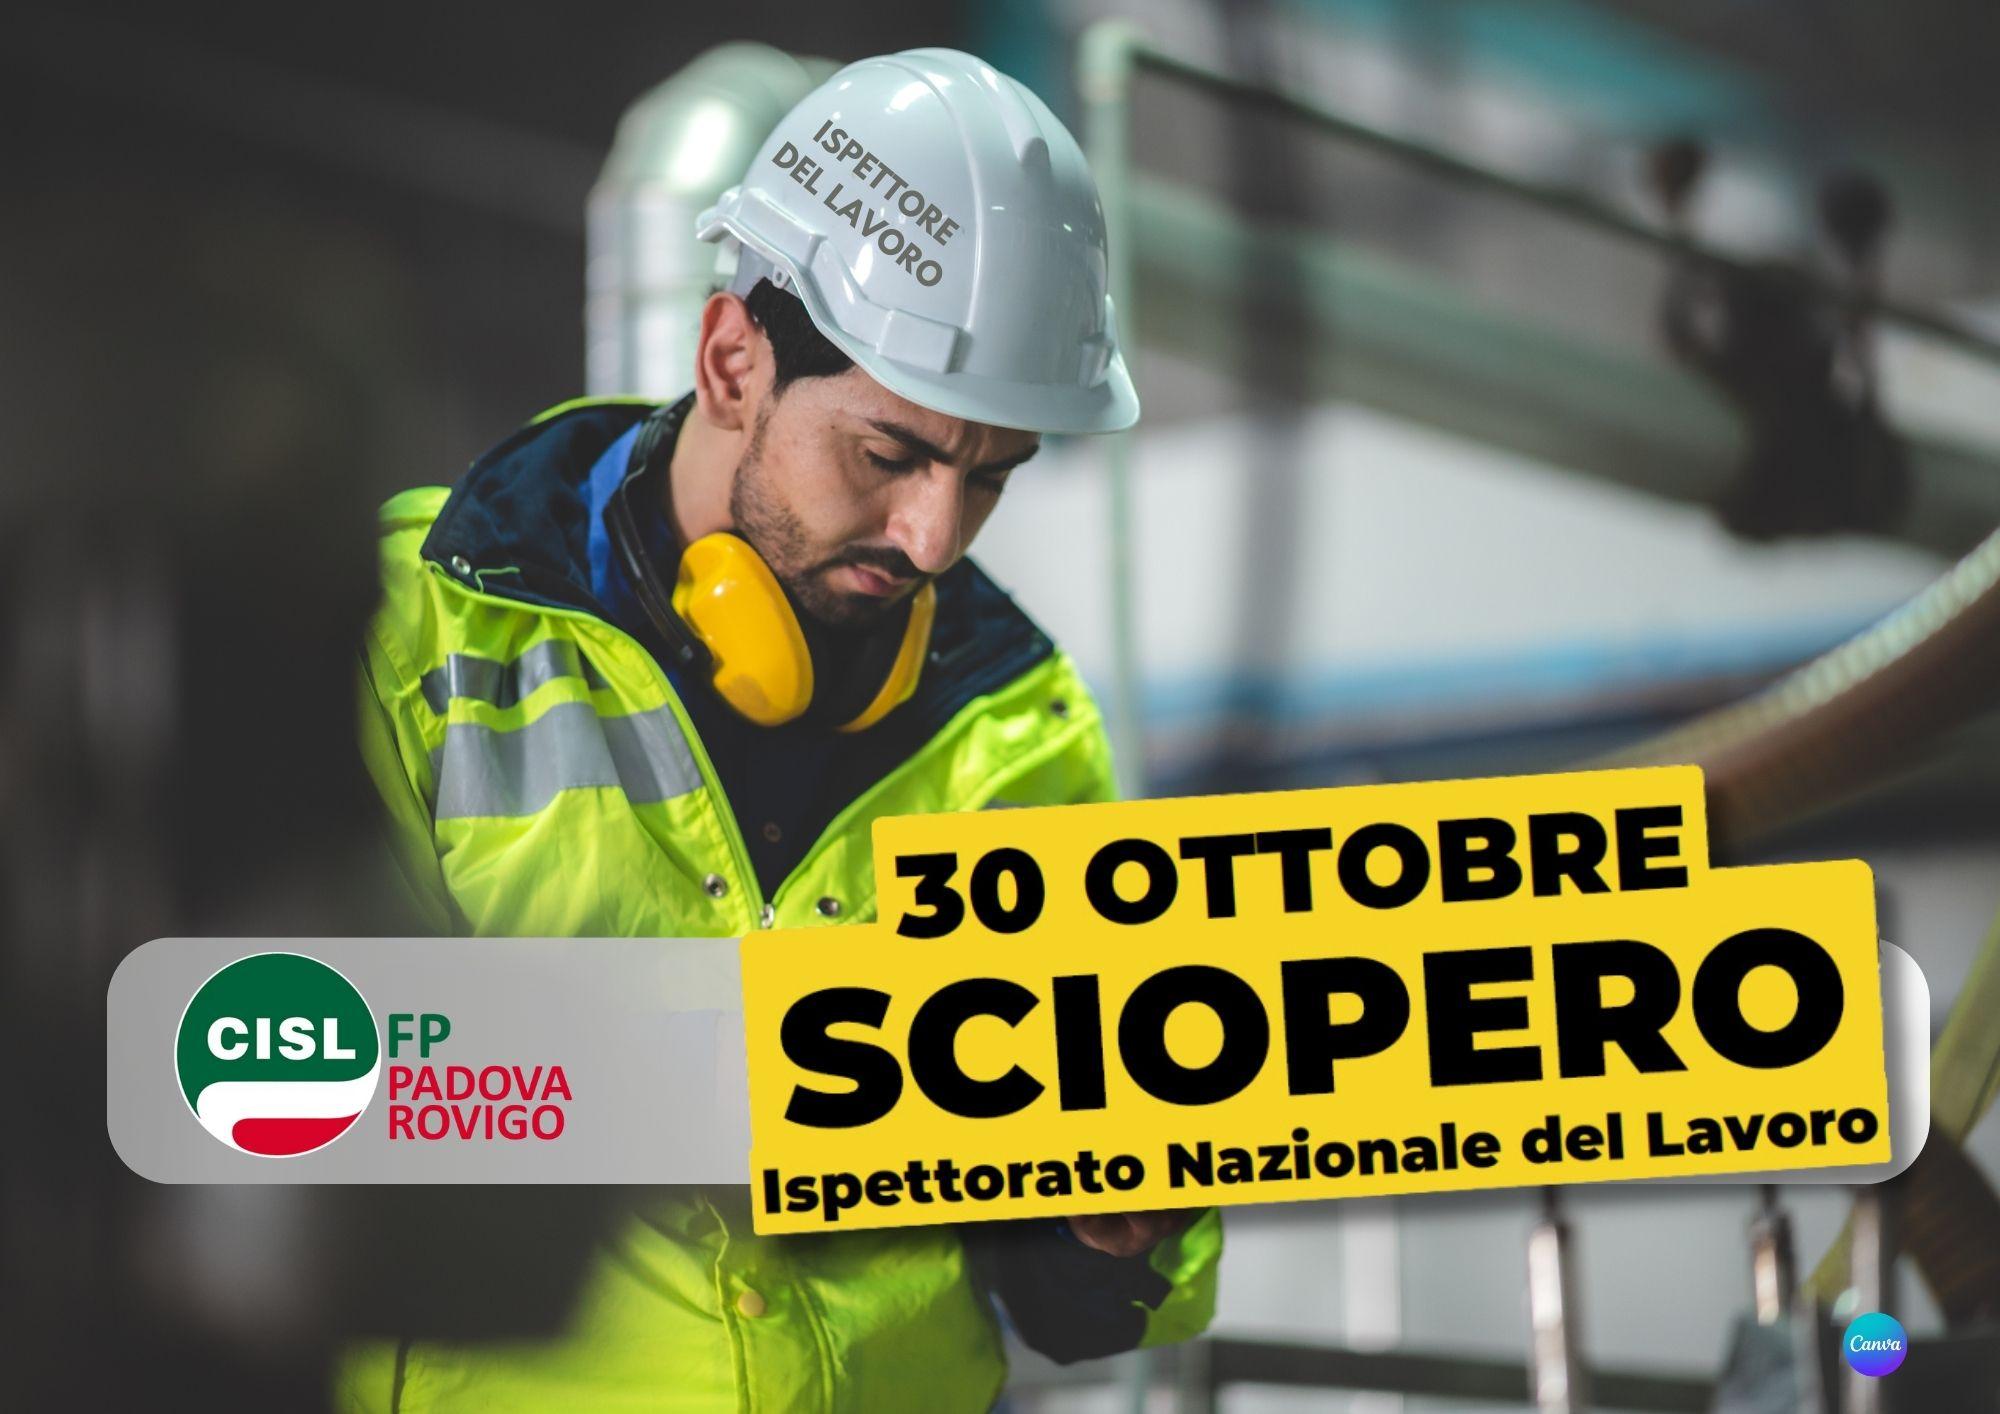 CISL FP Padova Rovigo. 30 ottobre sciopero Ispettorato Nazionale del Lavoro. La situazione. Le richieste